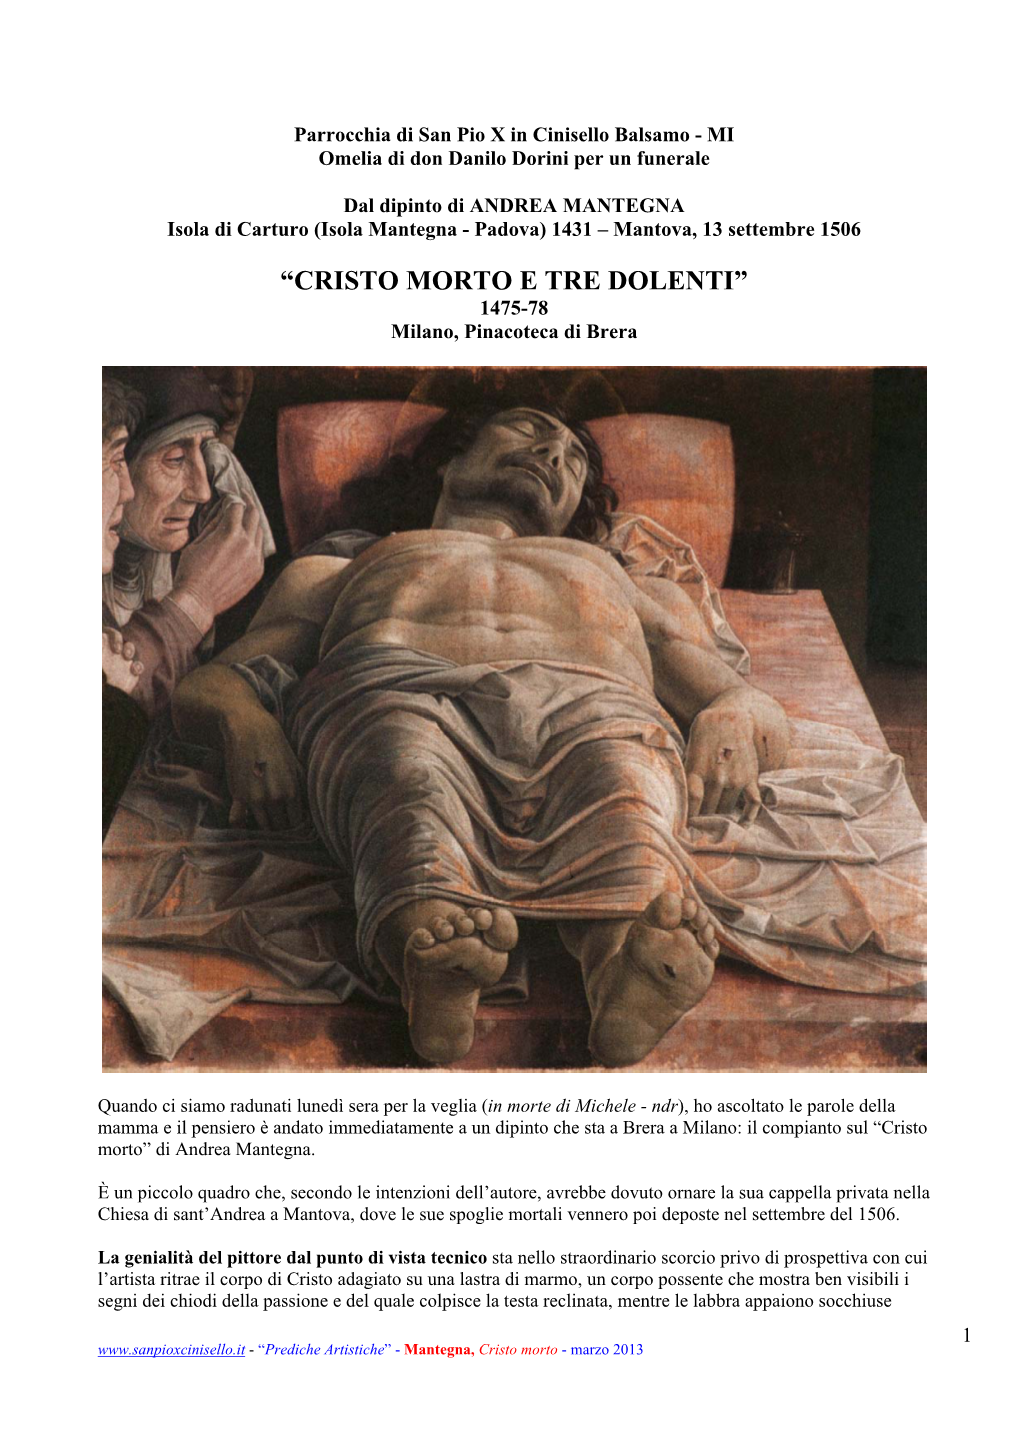 CRISTO MORTO E TRE DOLENTI” 1475-78 Milano, Pinacoteca Di Brera